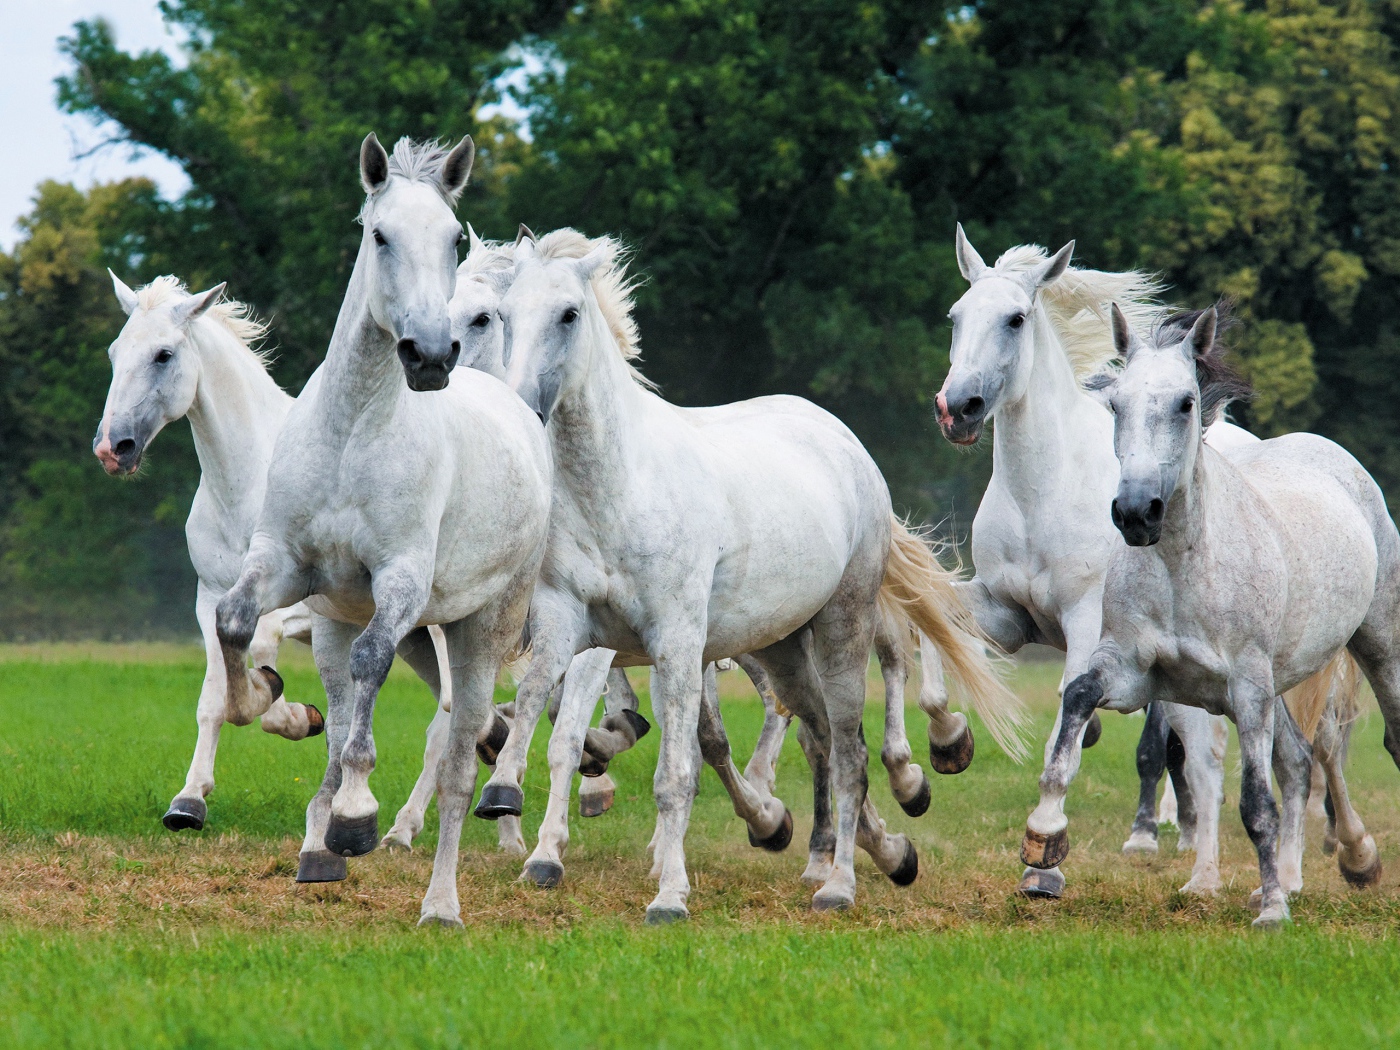 Табун белых лошадей скачет по траве